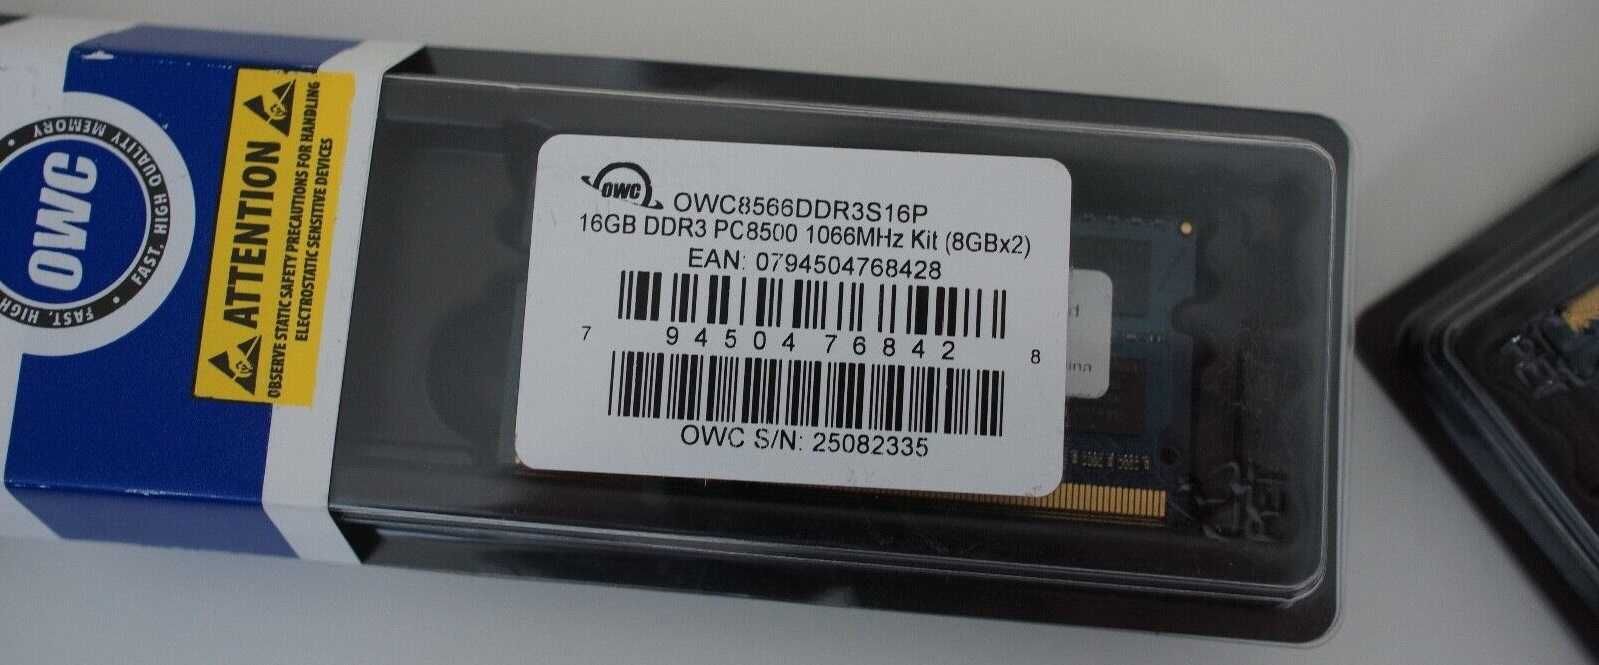 Нова пам'ять Macbook 16Gb DDR3 PC8500 1066MHz Kit (8Gbx2) OWC оригінал